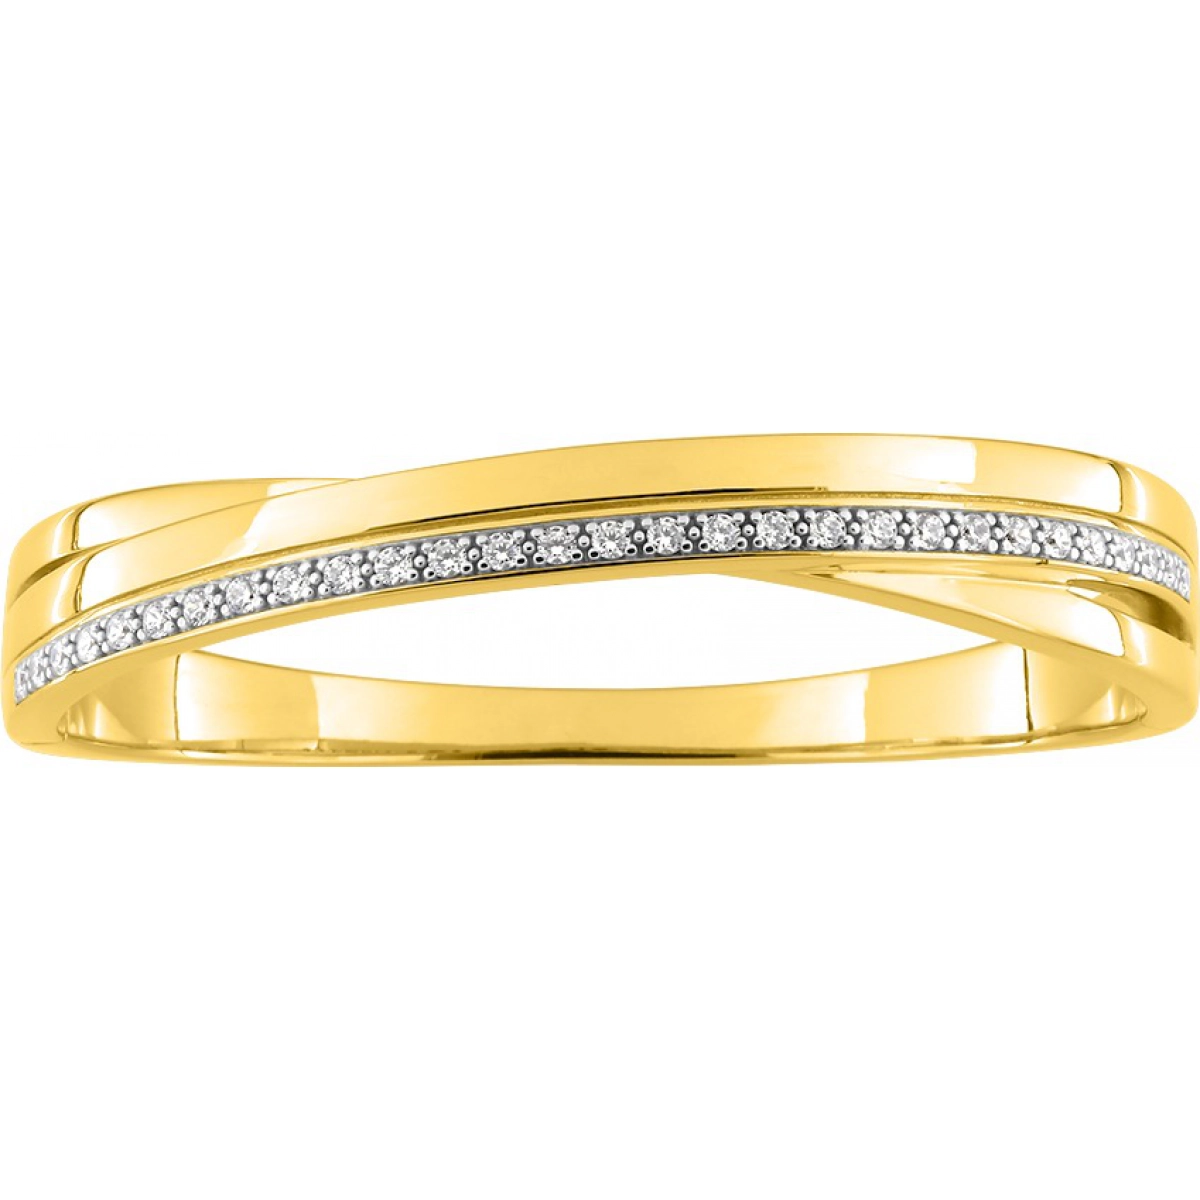 Bracelet w. cz gold plated Brass Lua Blanca  256973.9 